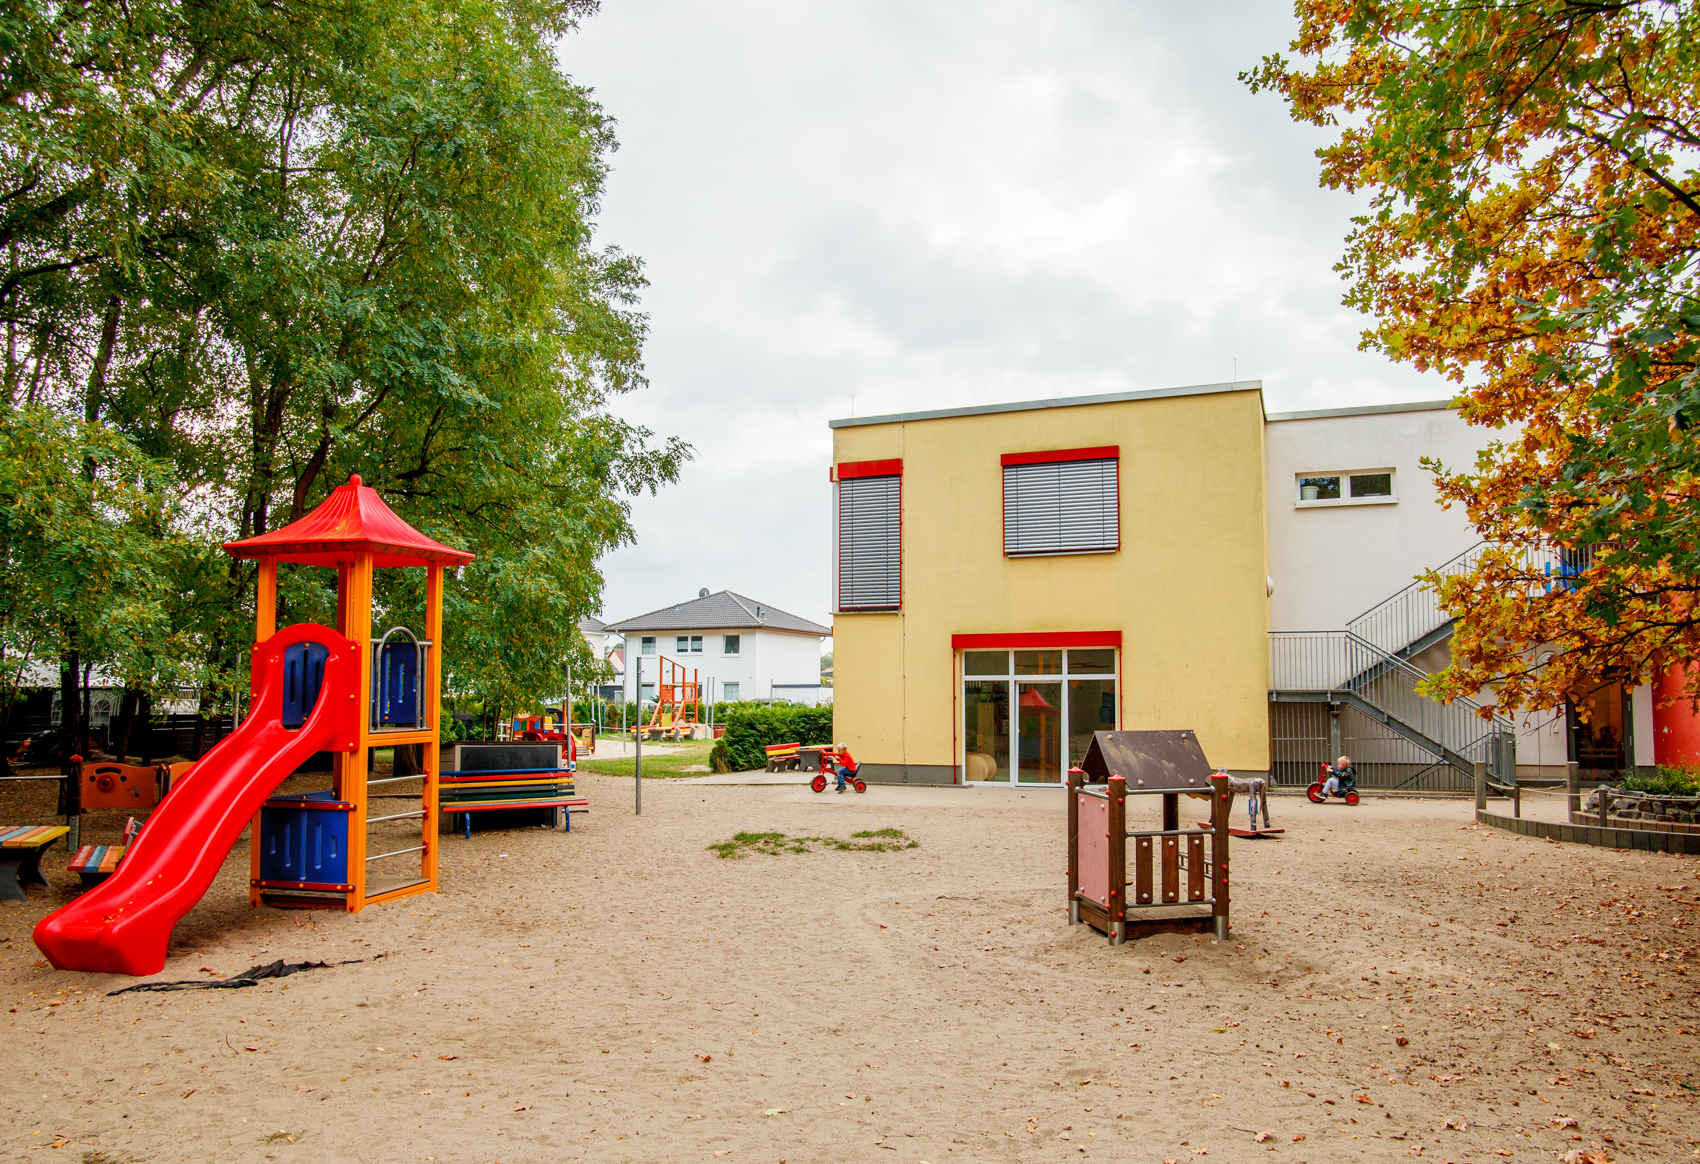 Spielplatz mit roter Rutsche und Gebäude im Hintergrund